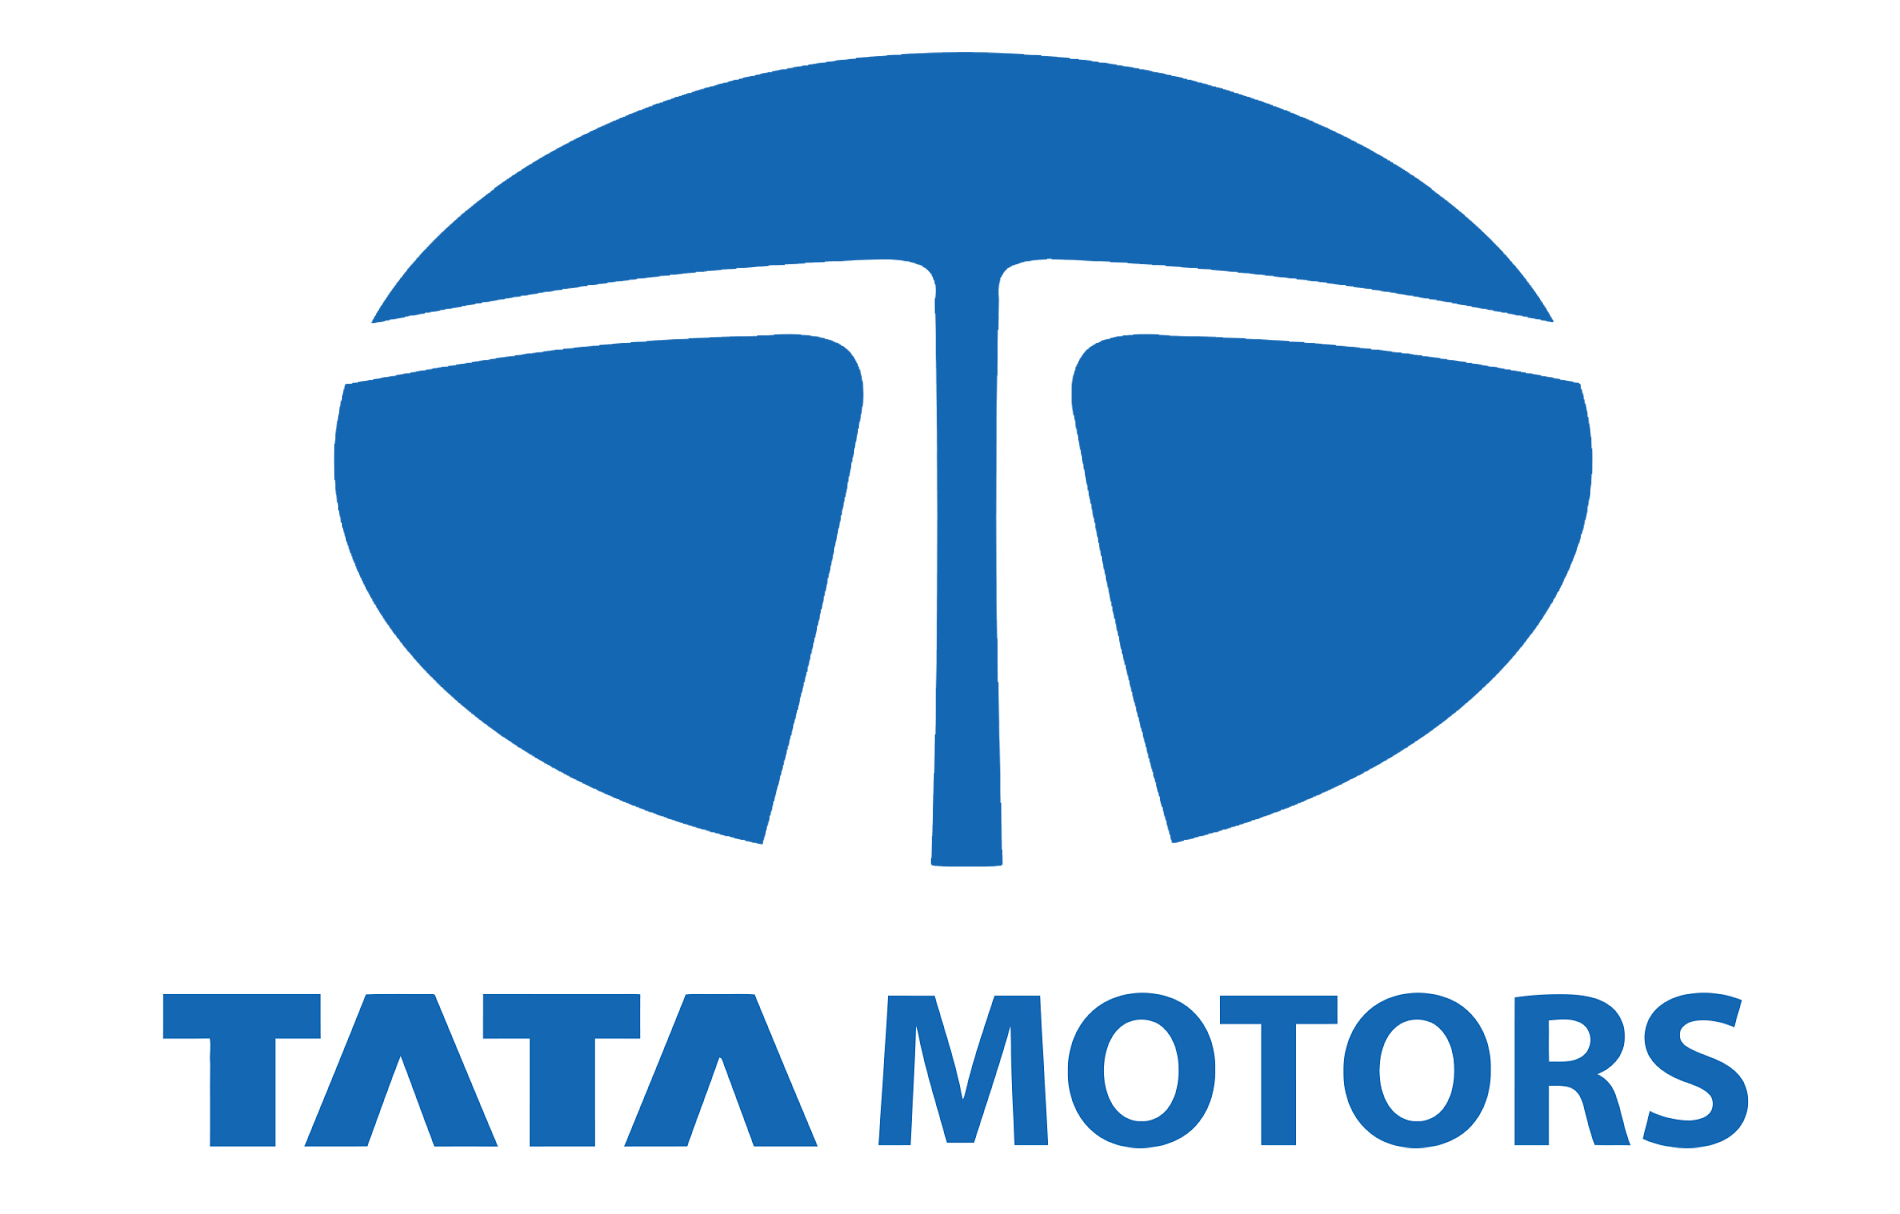 Tata Motors Cars Showroom - Shreeji Automart Pvt Ltd|Car Wash|Automotive